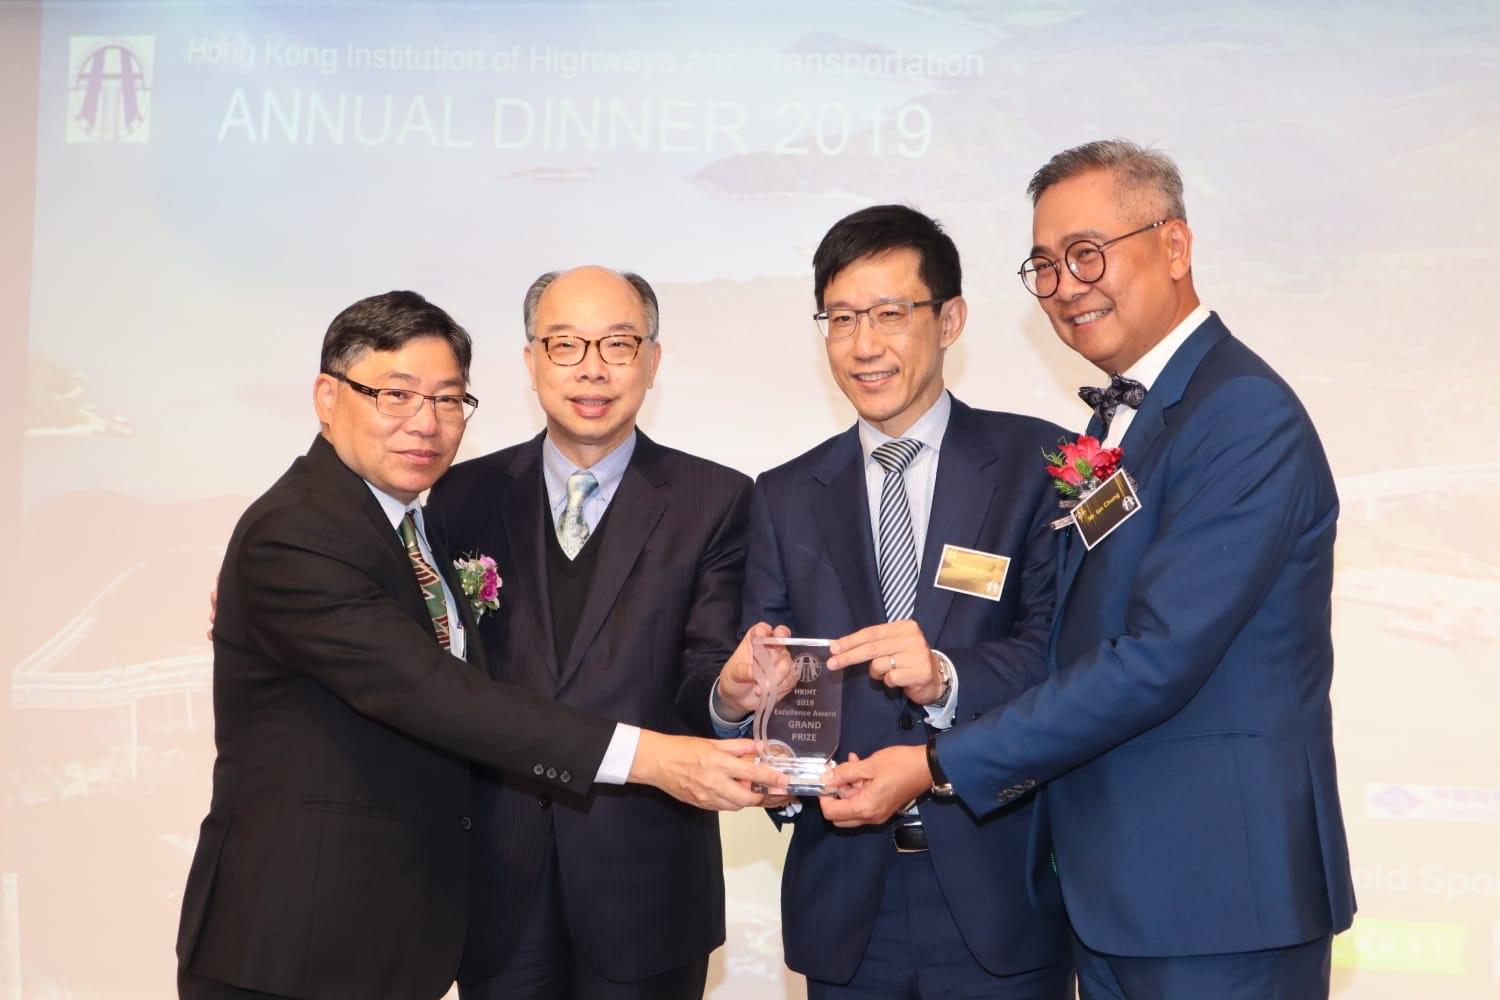 港珠澳大桥香港段工程项目(包括香港连接路及香港口岸)获颁香港公路学会2019年度公路和交通卓越奖。